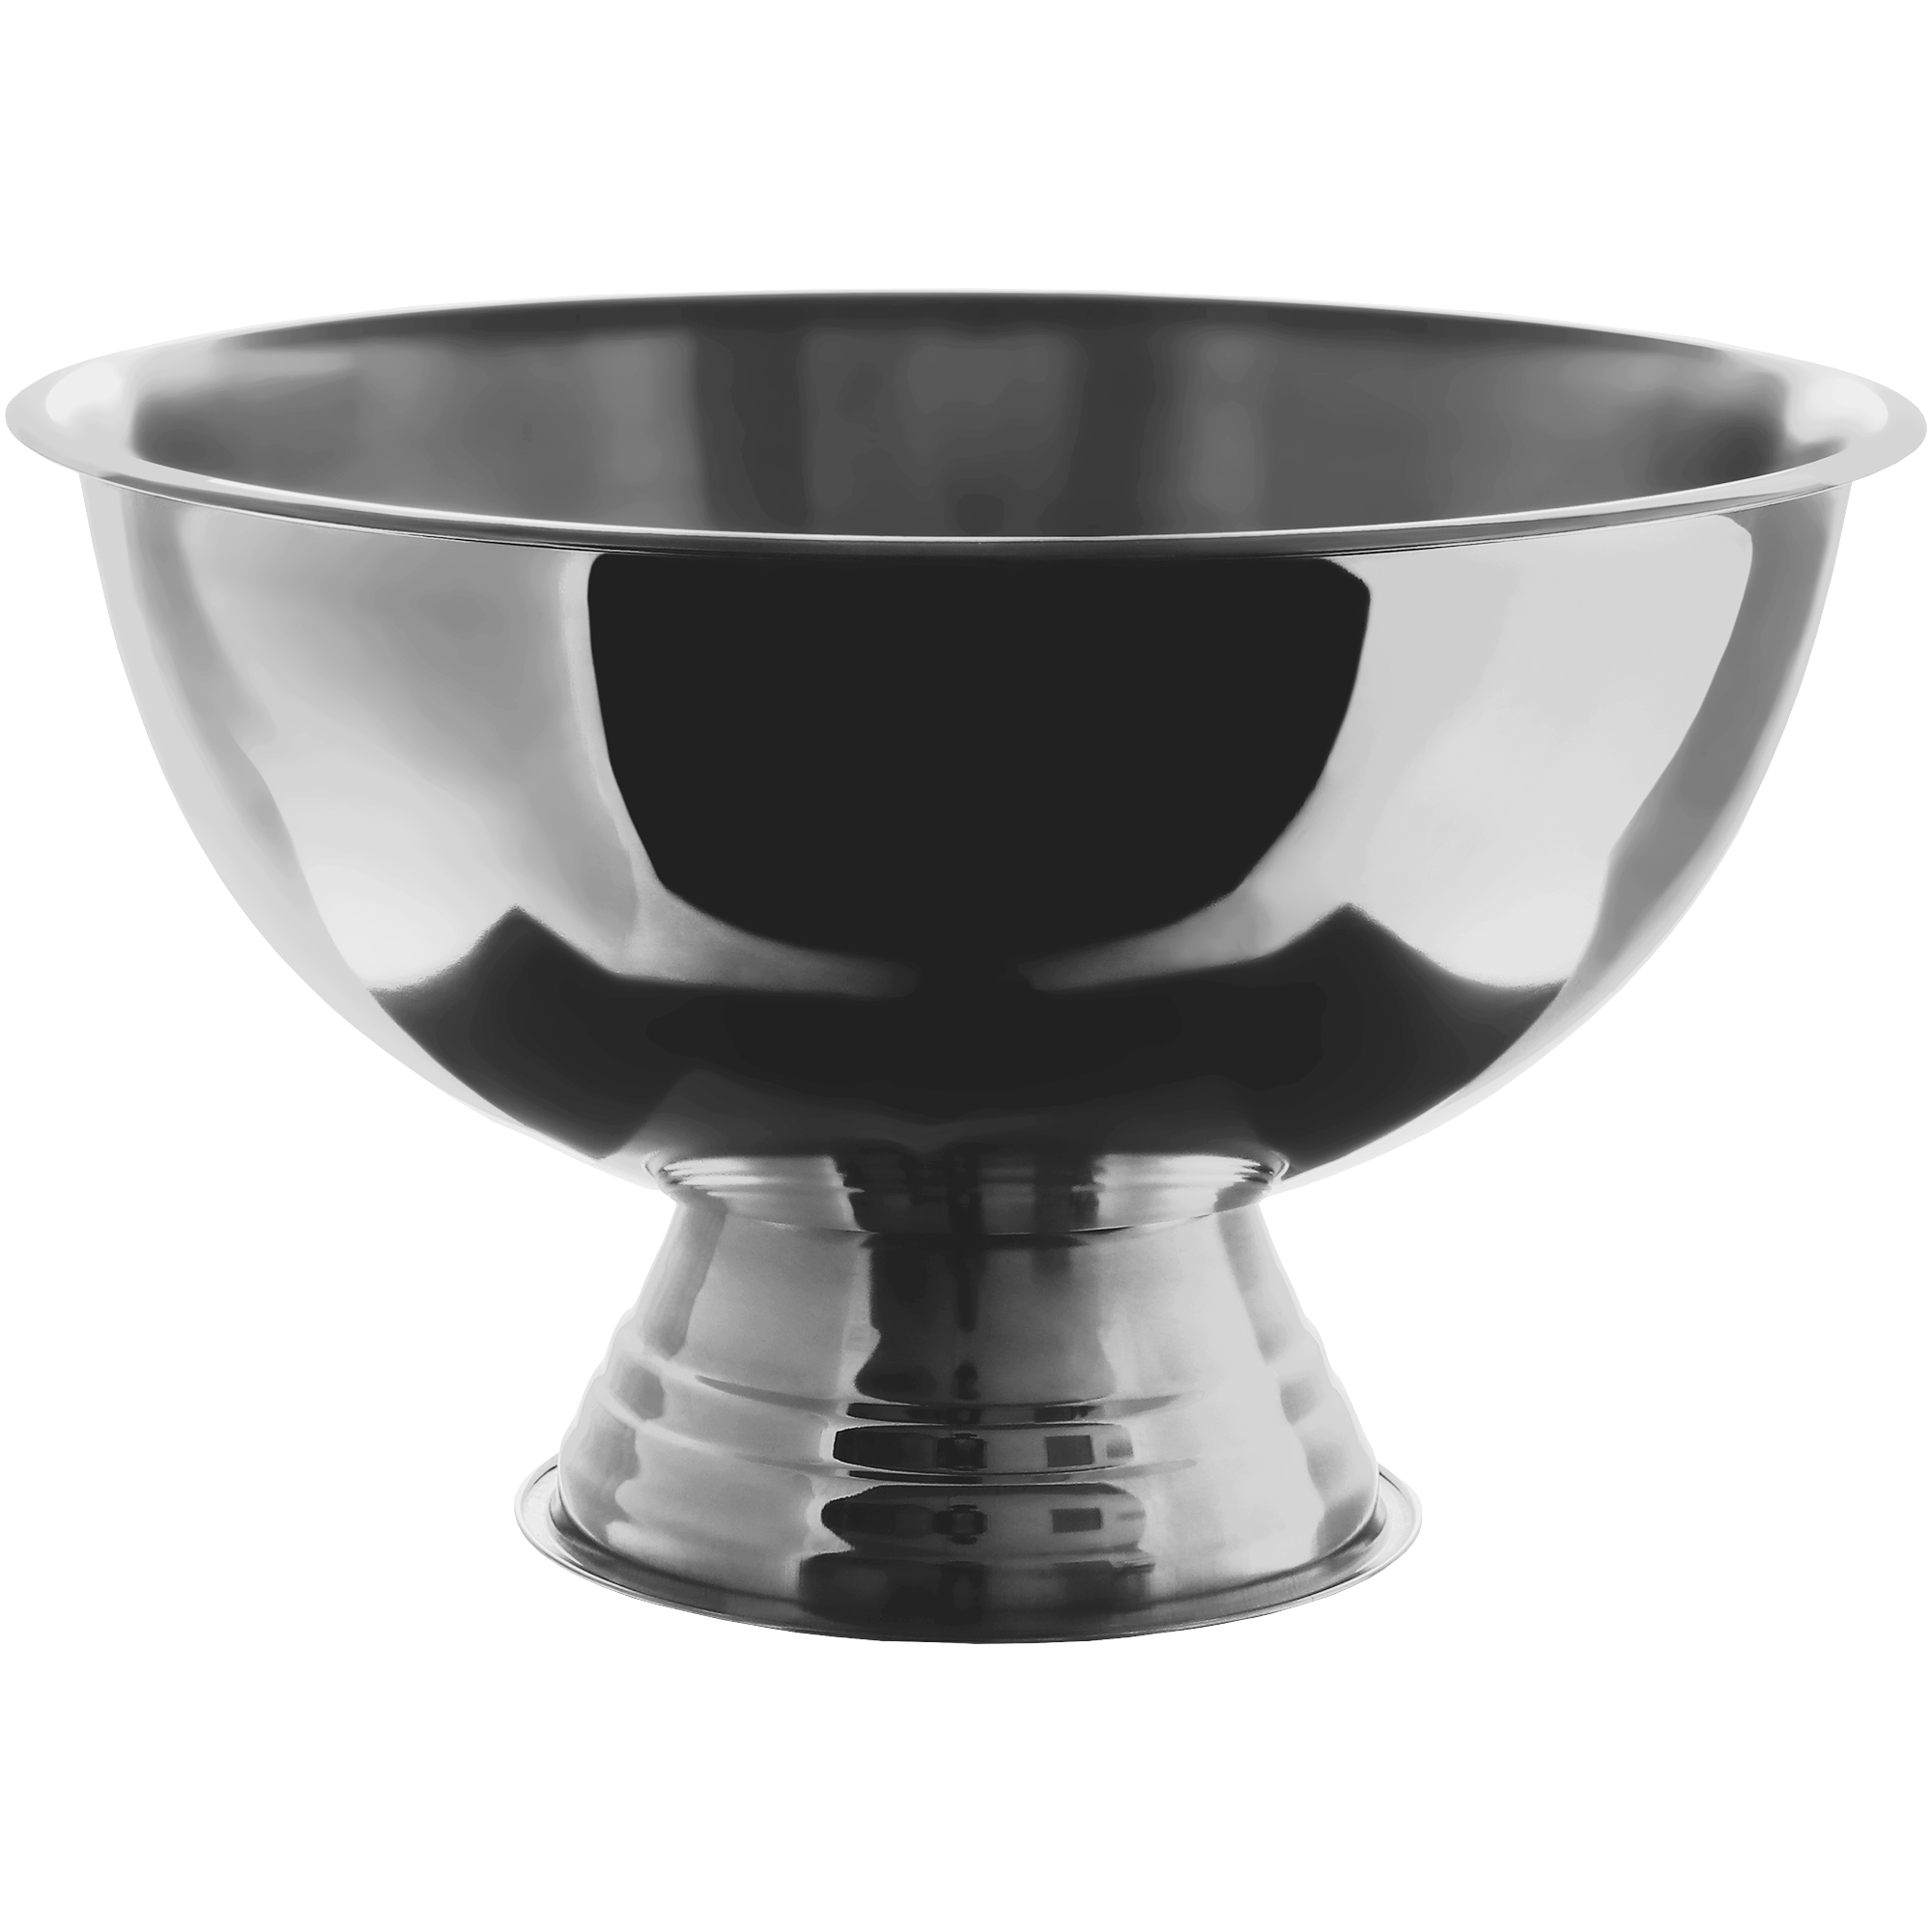 Миска для льда Koopman tableware 39x24 см, цвет черный - фото 1